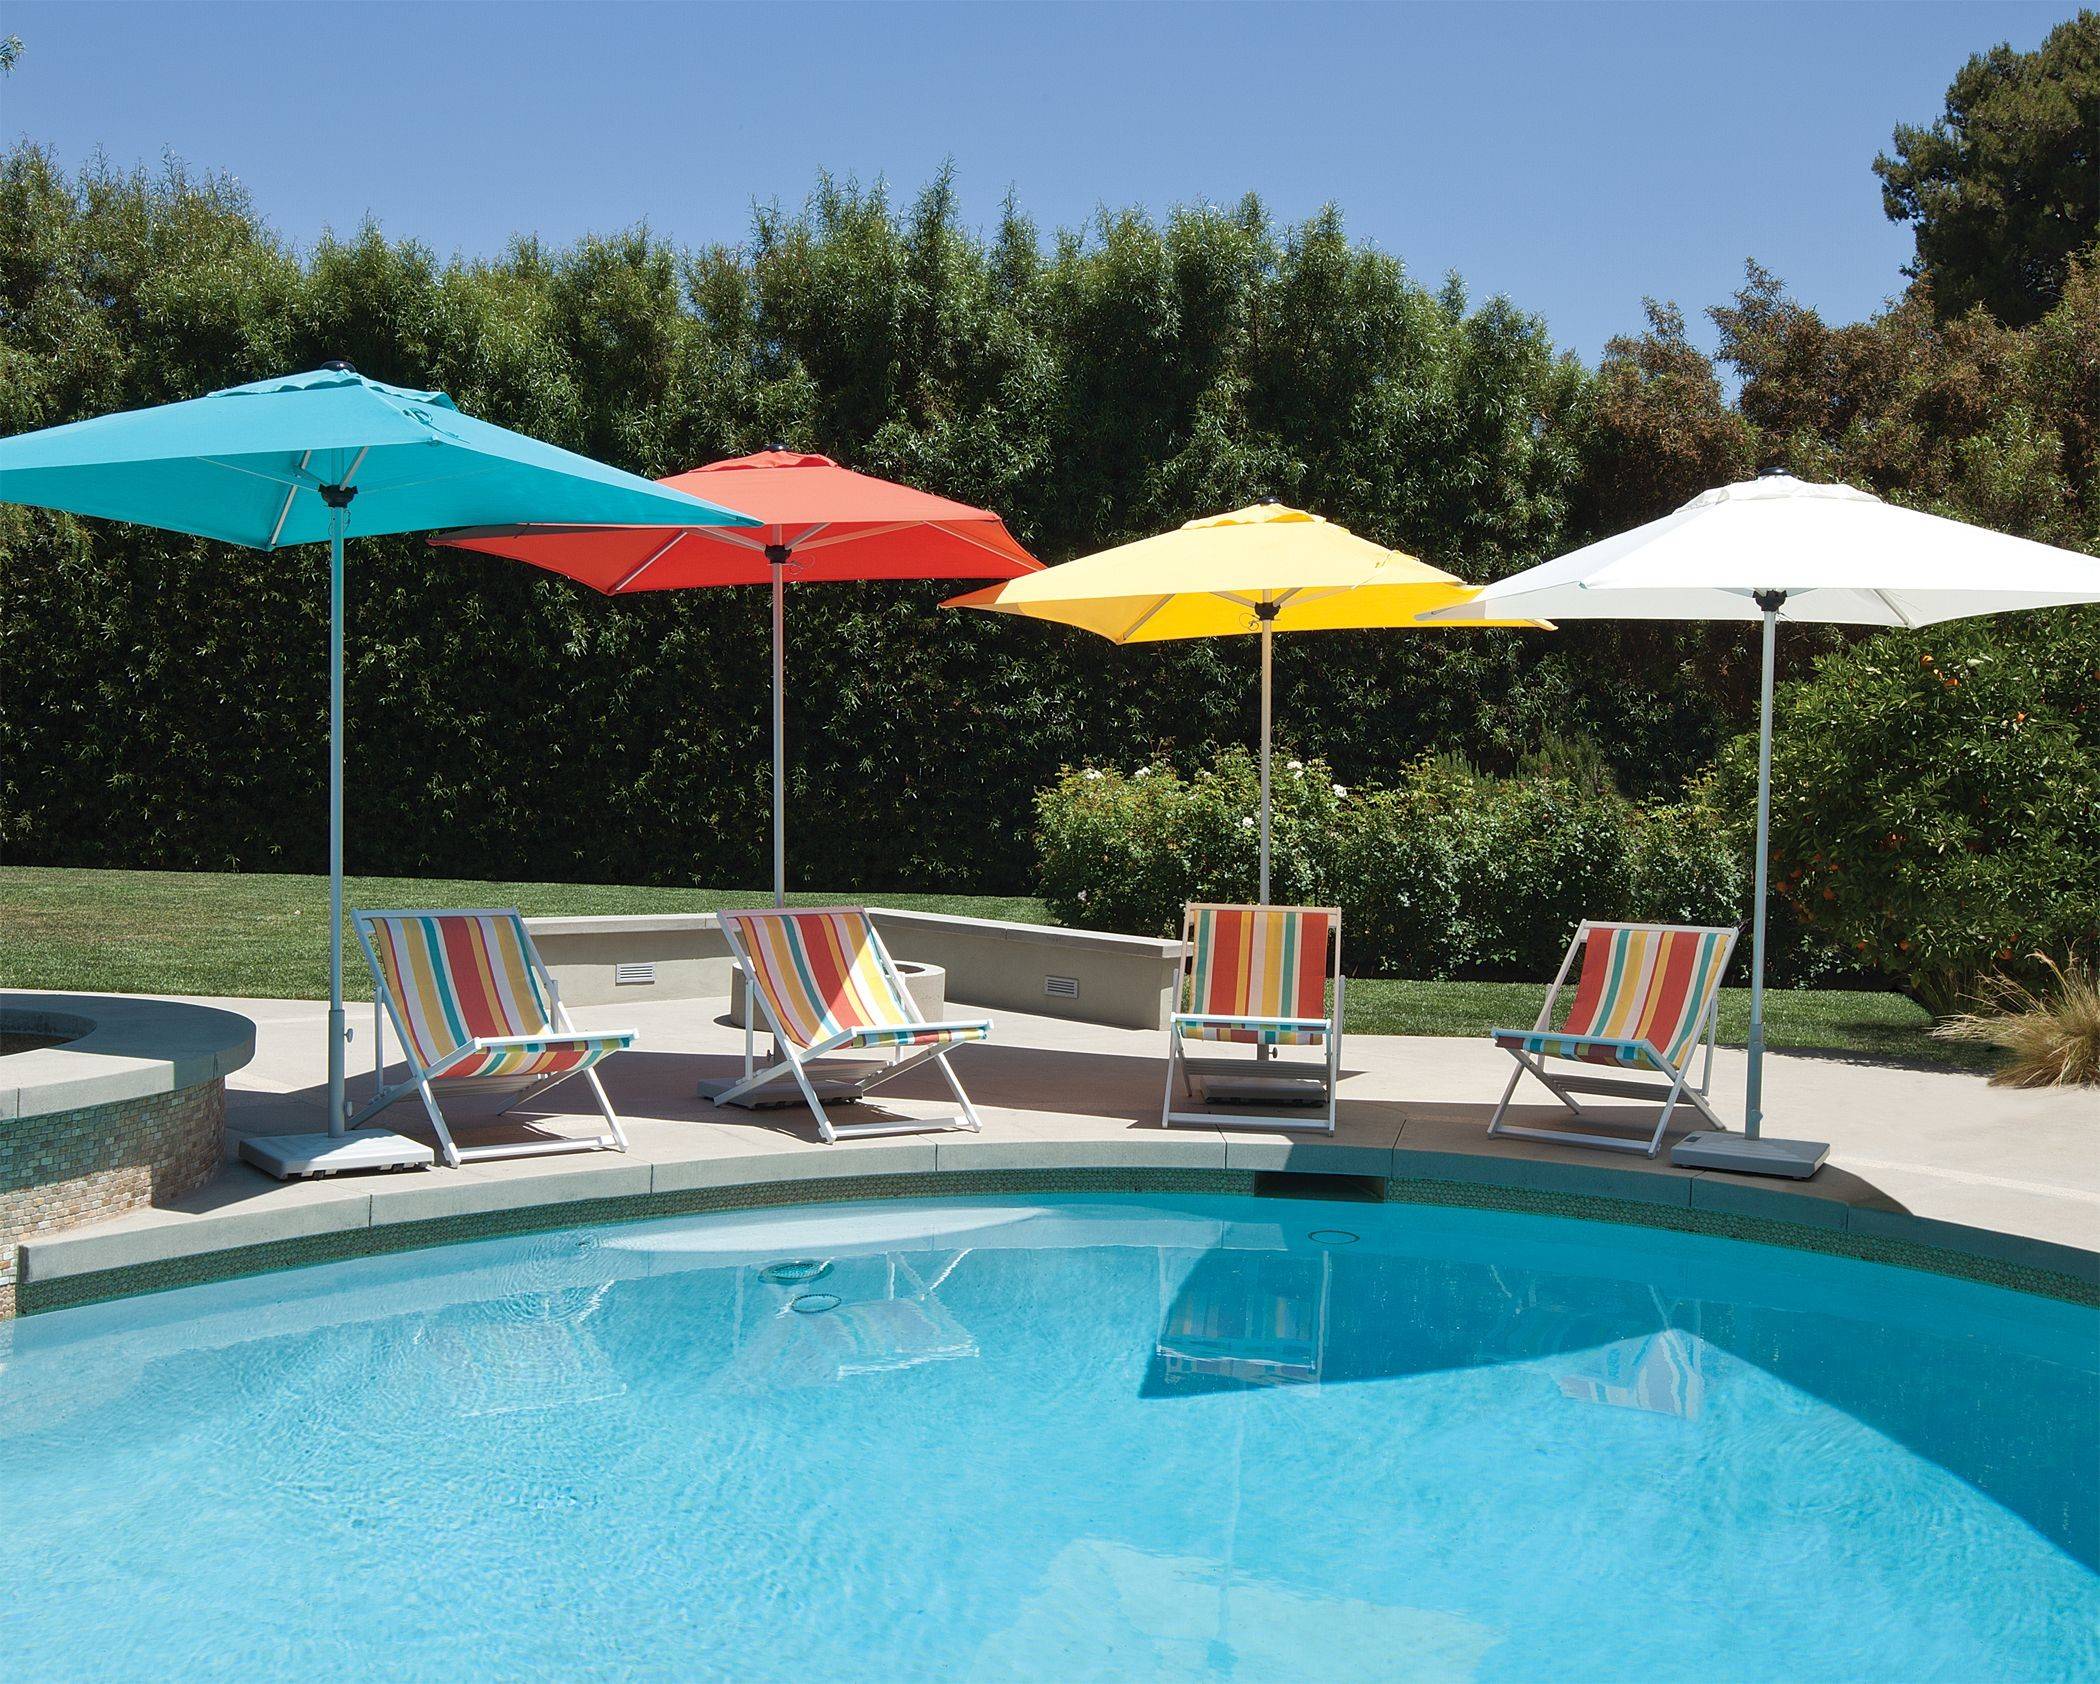 multicolored patio umbrellas by pool